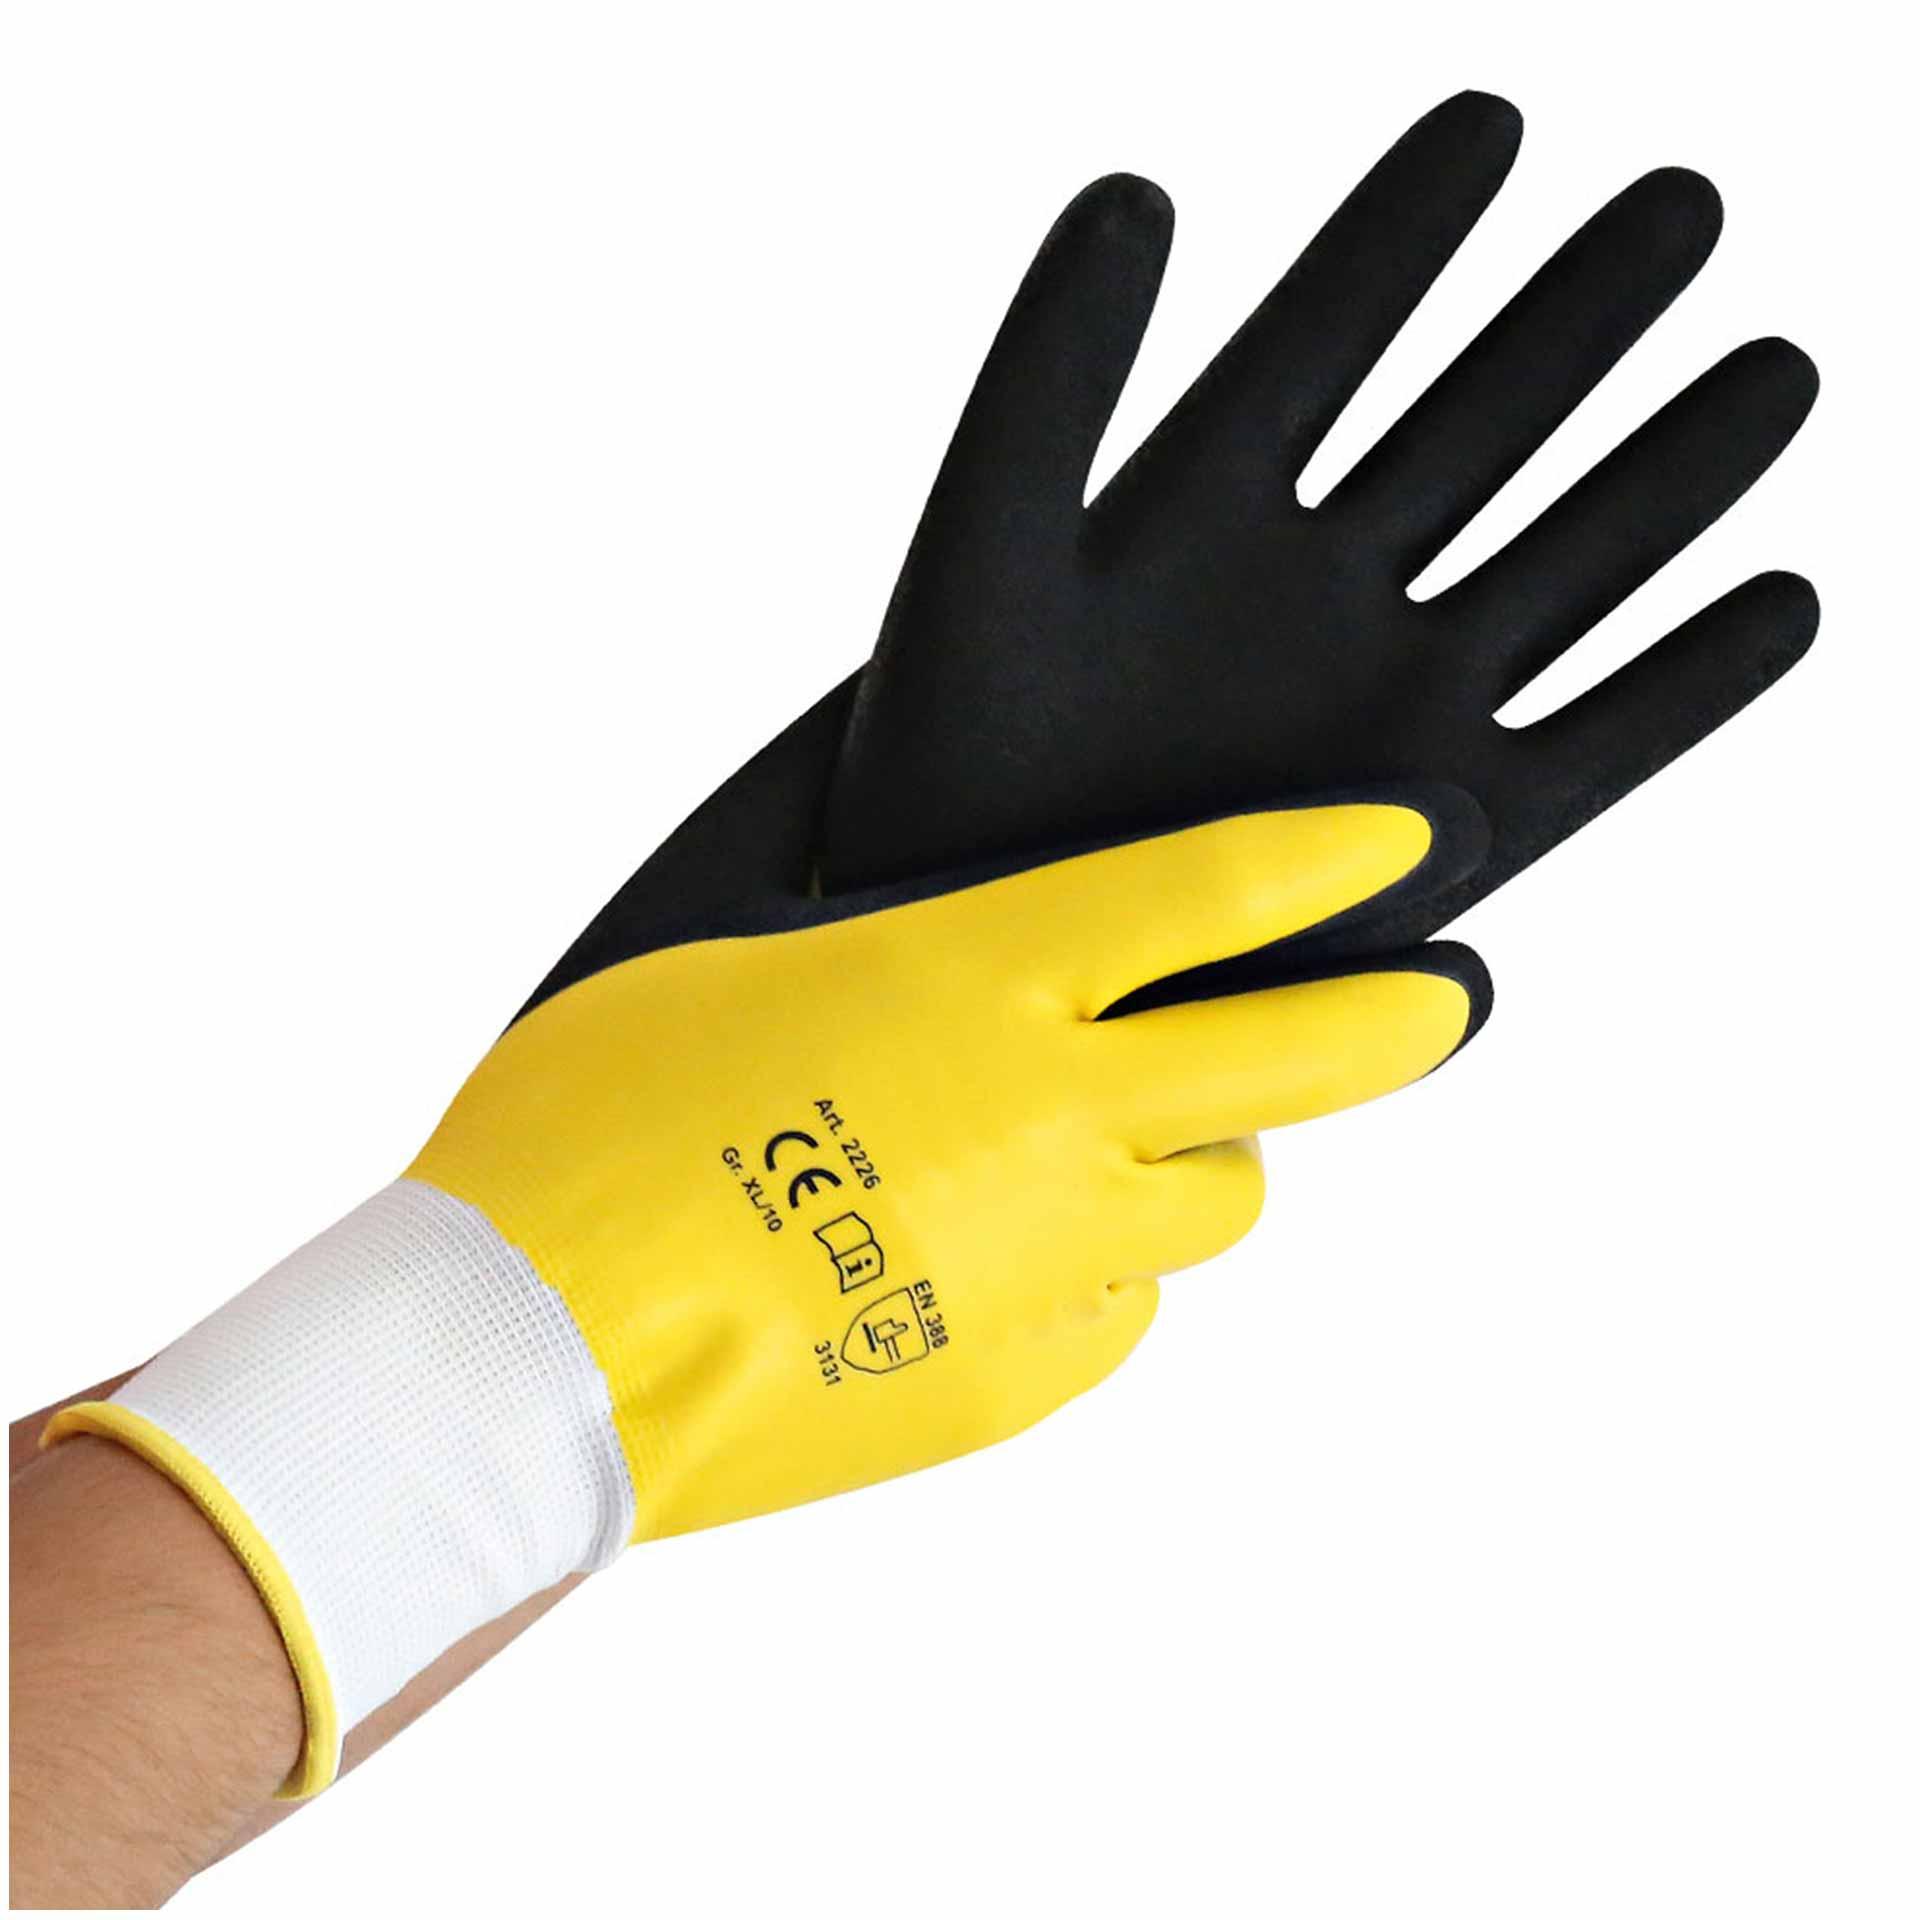 Gants de travail "Wet Protect" XL / 10 jaune-noir 26cm